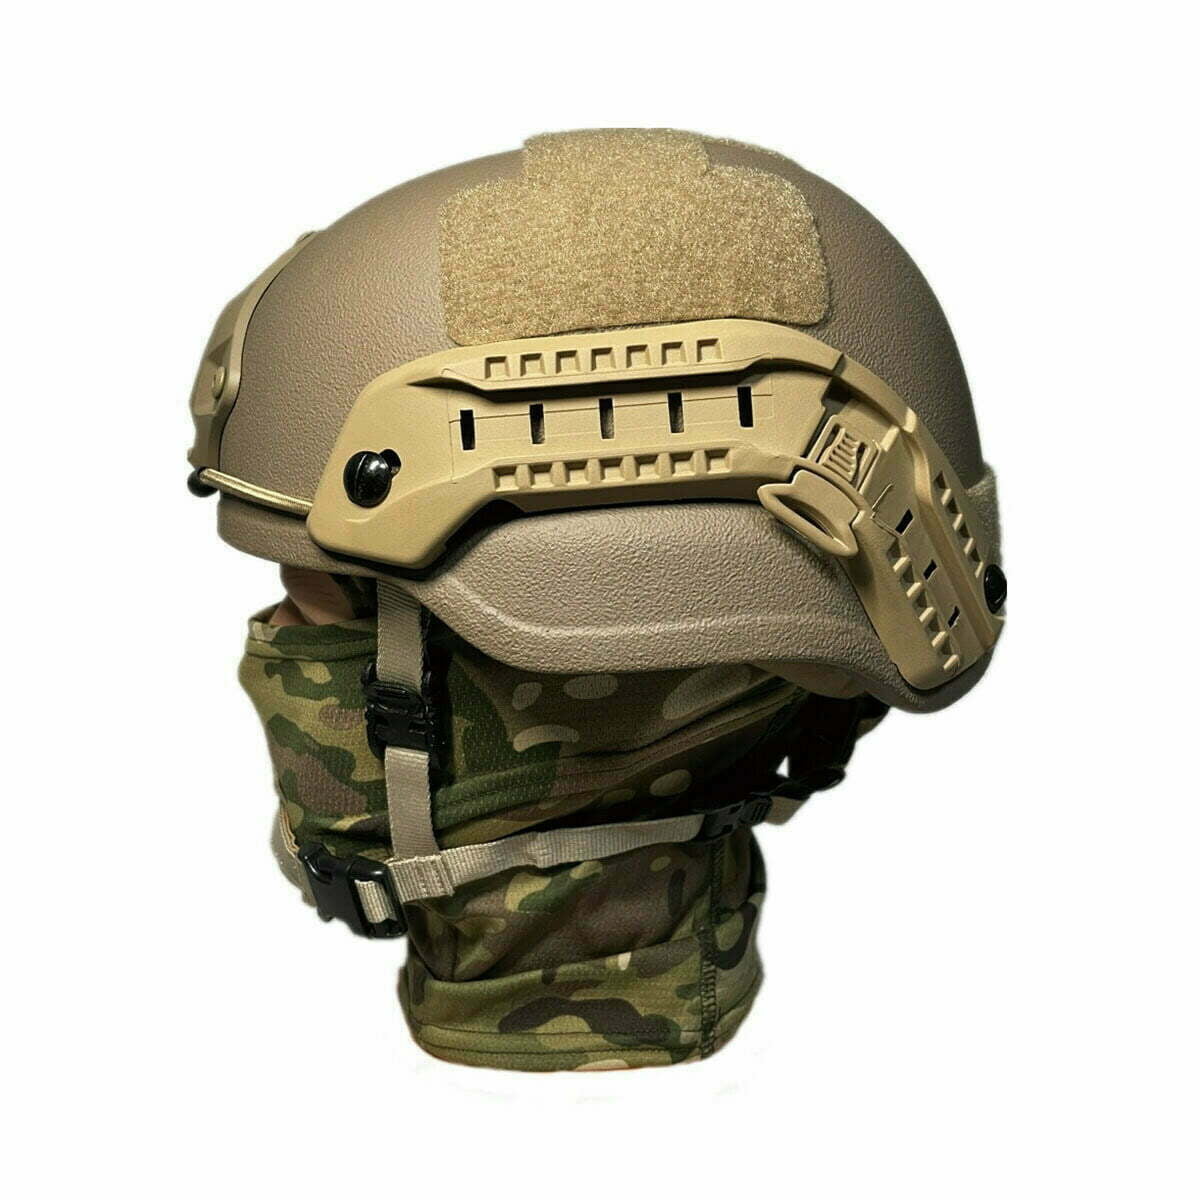 Casco militar polaco, casco táctico de Kevlar clase IIIA, casco energético  con máscara rápida, negro – Kask wojskowy balistyczny, hełm taktyczny  kevlar